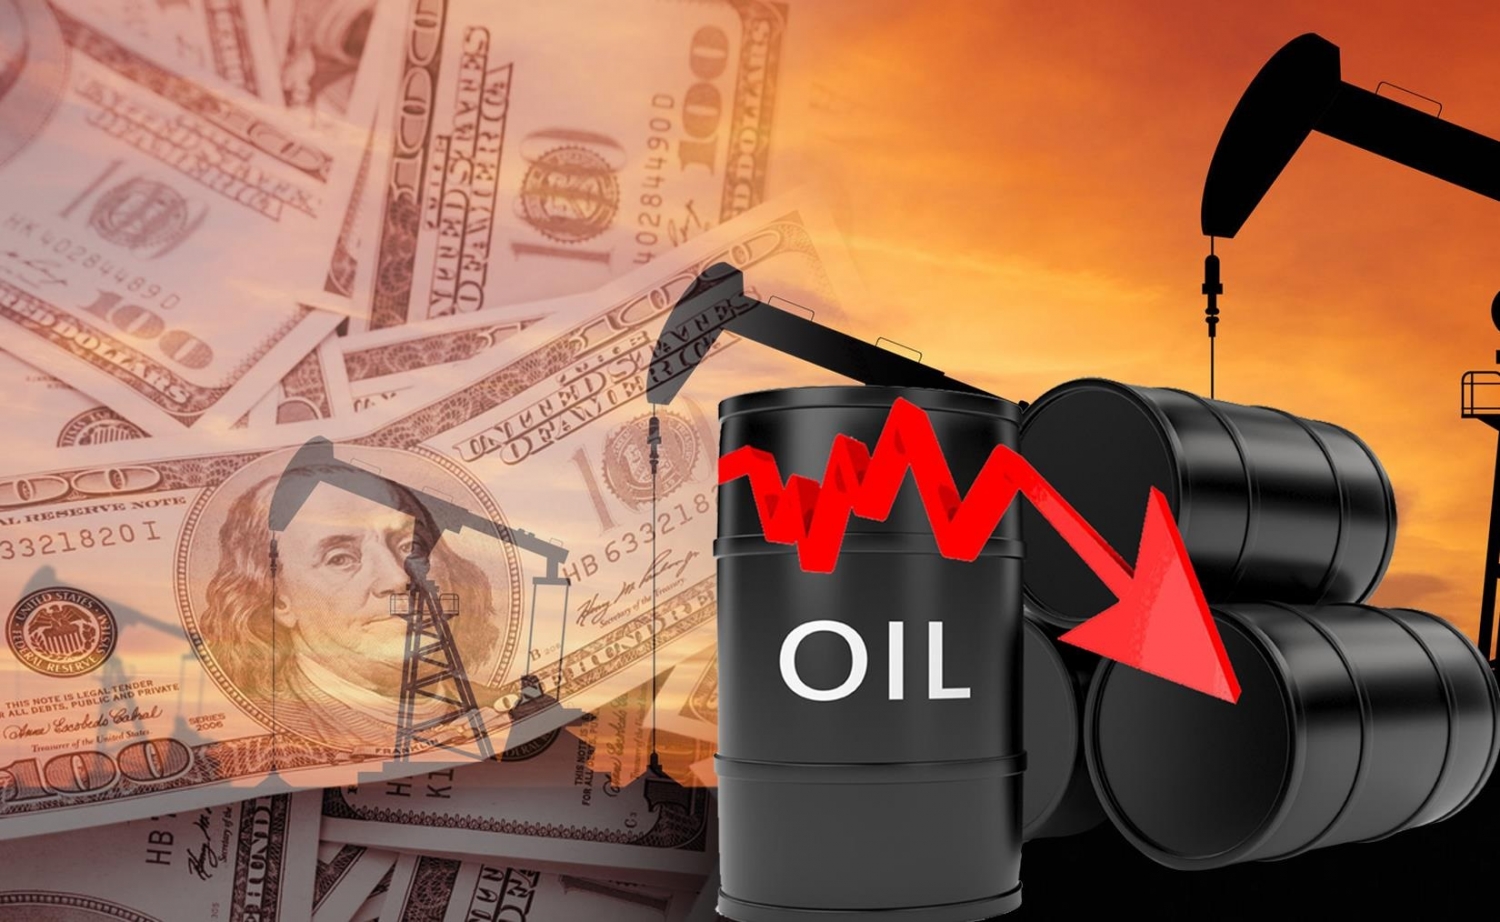 Giá dầu giảm sau khi Trung Quốc hạ mục tiêu tăng trưởng